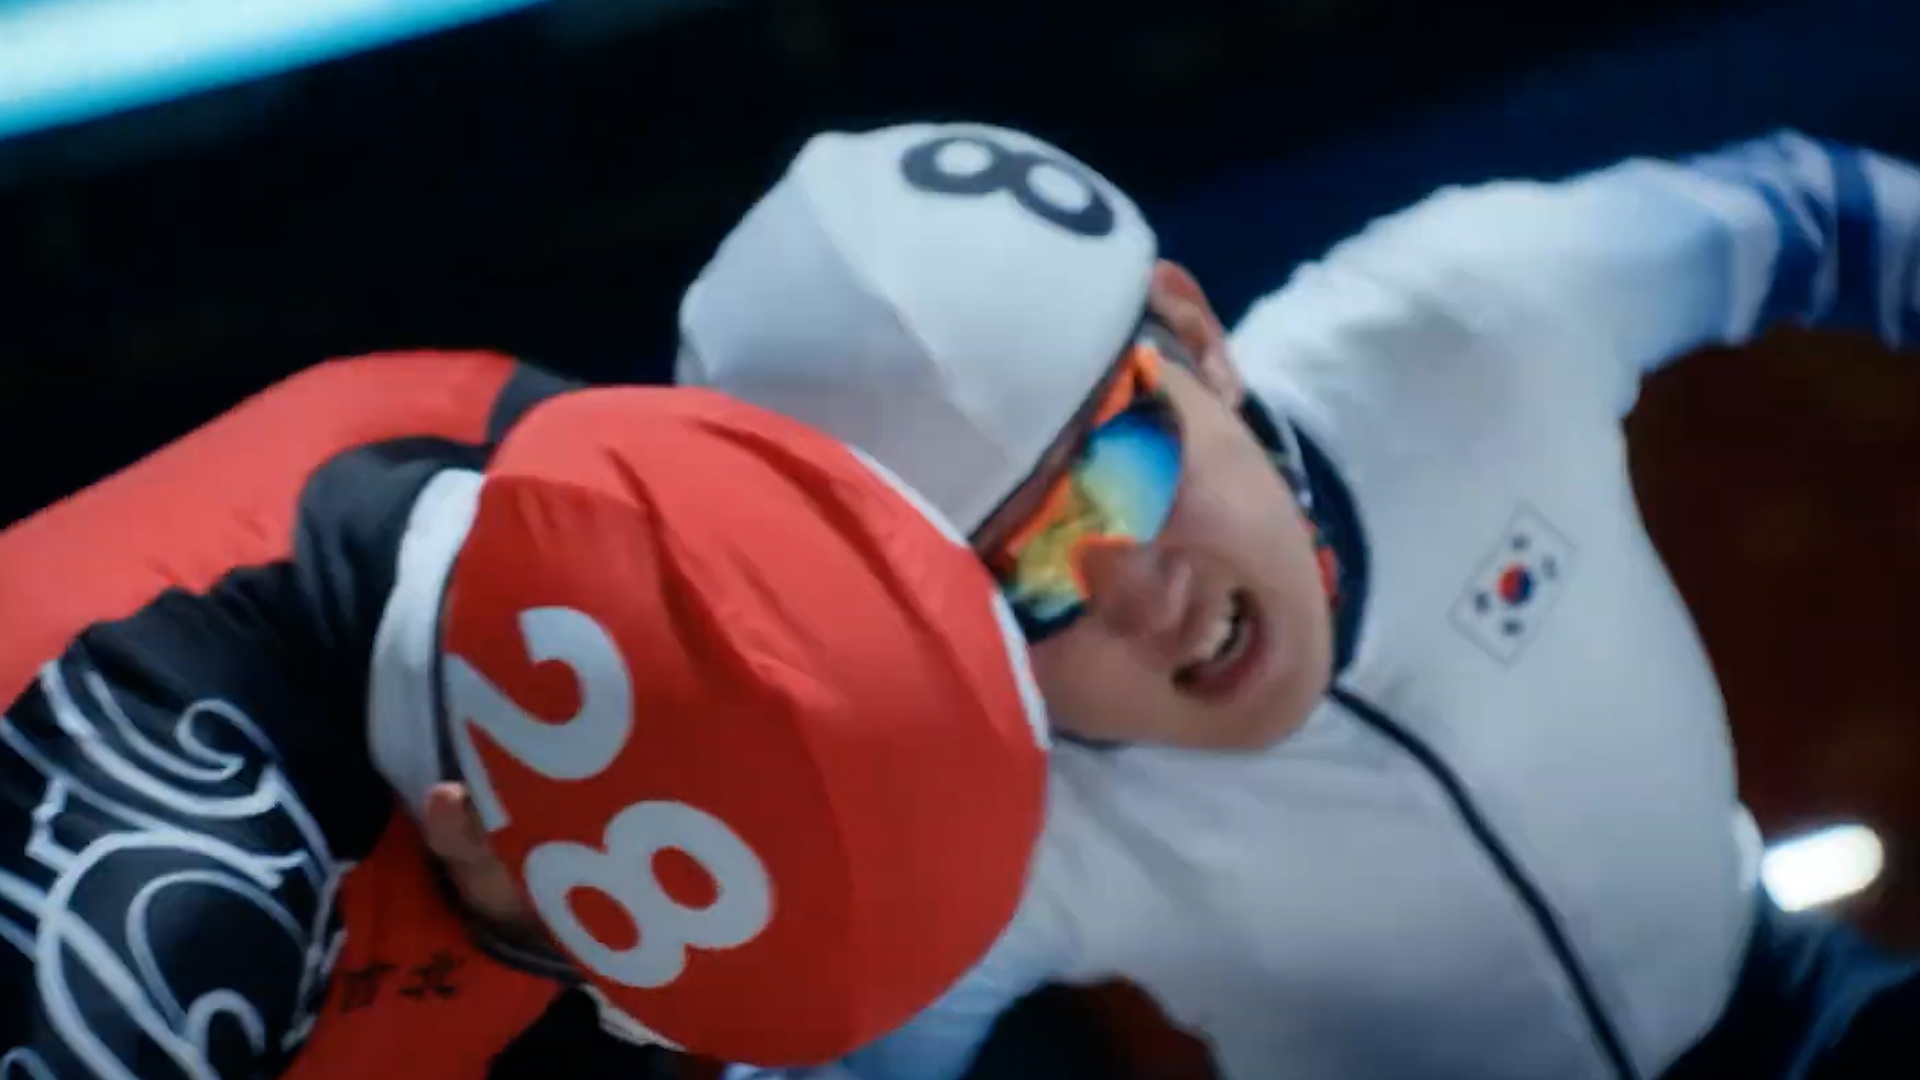 중국 쇼트트랙 영화 ‘날아라, 빙판 위의 빛’ 캡처. 영화에서 한국 선수들은 반칙을 일삼는 모습으로 그려진다.